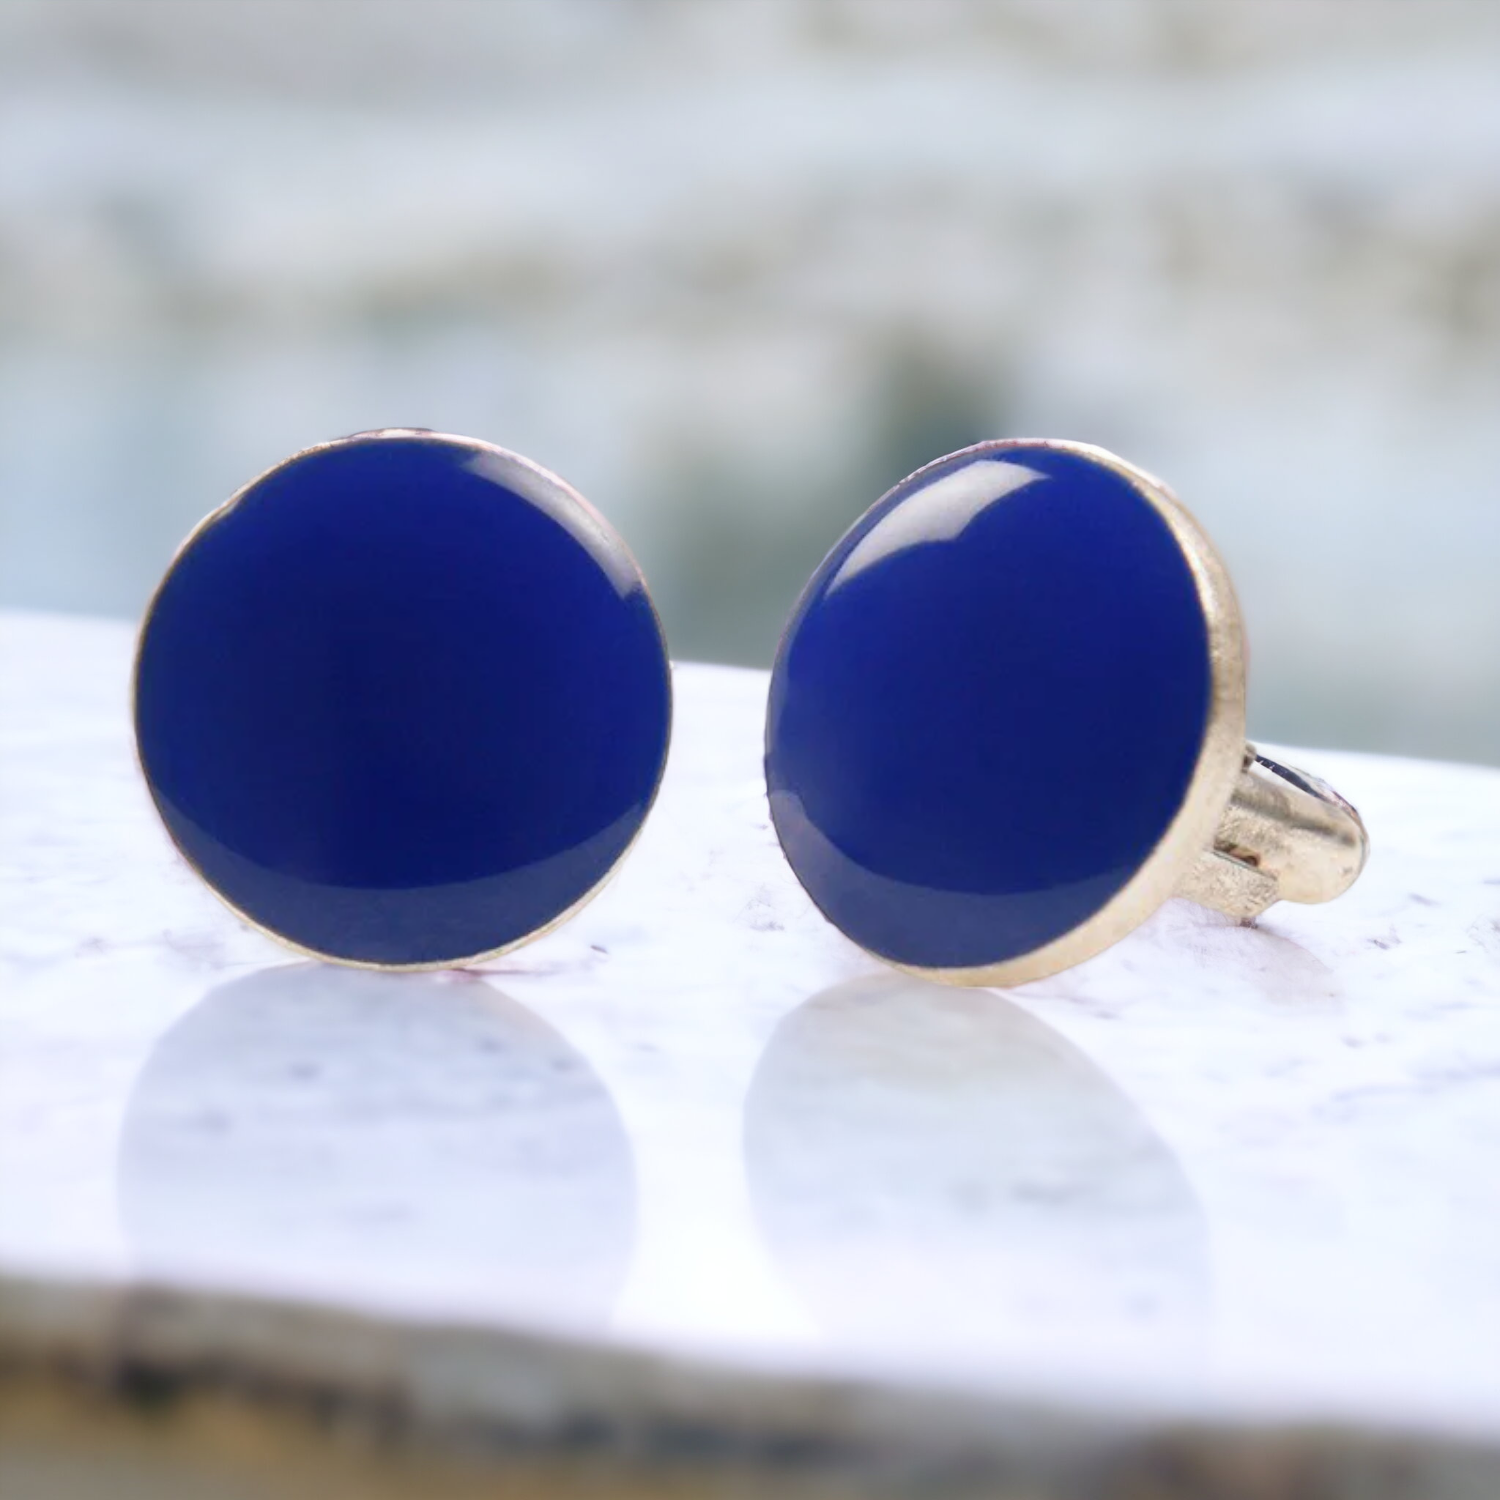 Chokore Cobalt Blue color Round shape Cufflinks